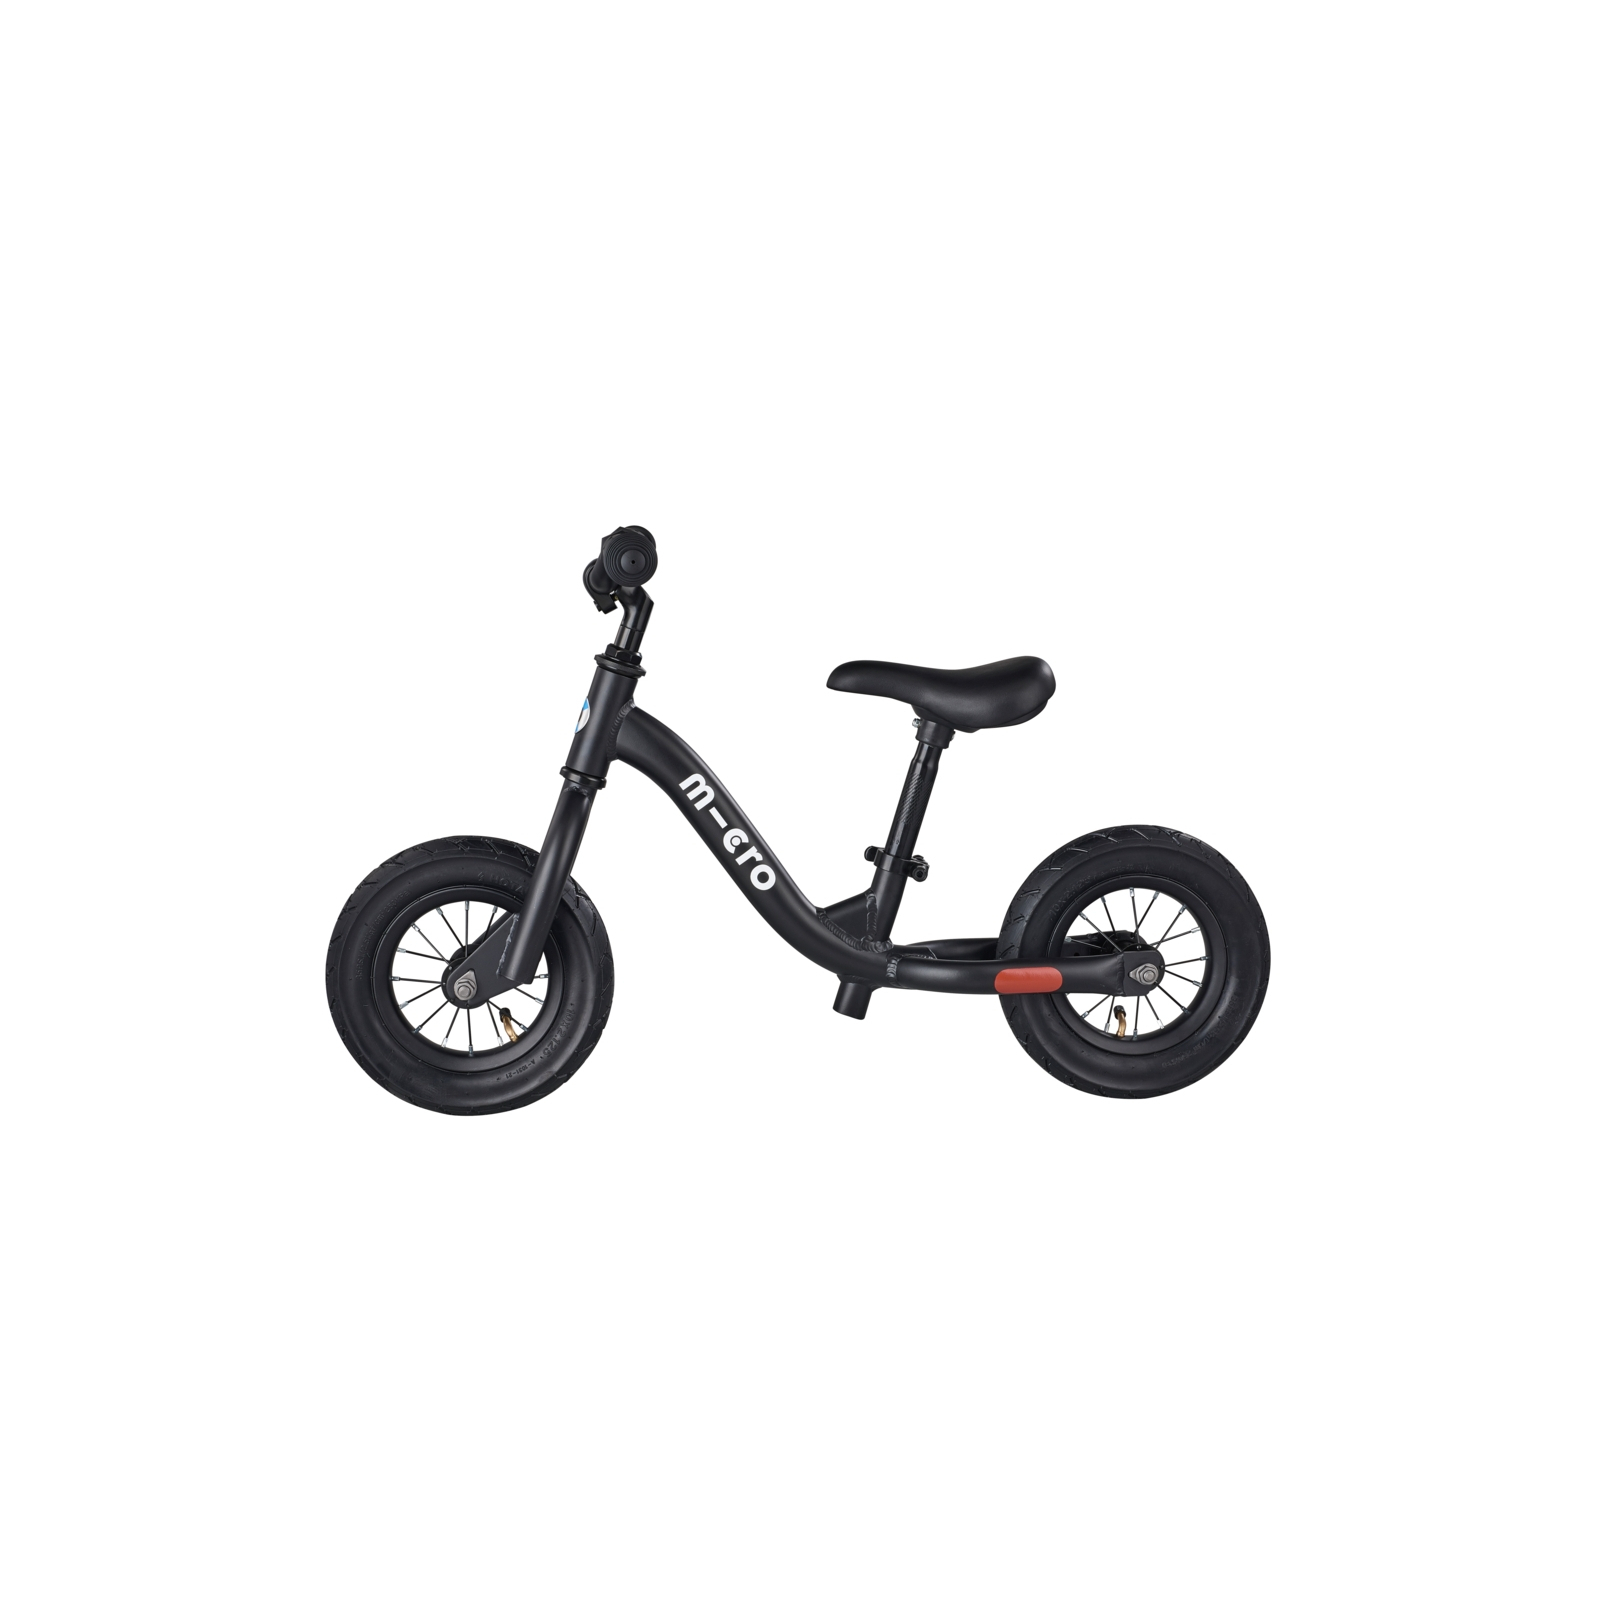 Біговел Micro Balance bike Black (GB0030) зображення 2